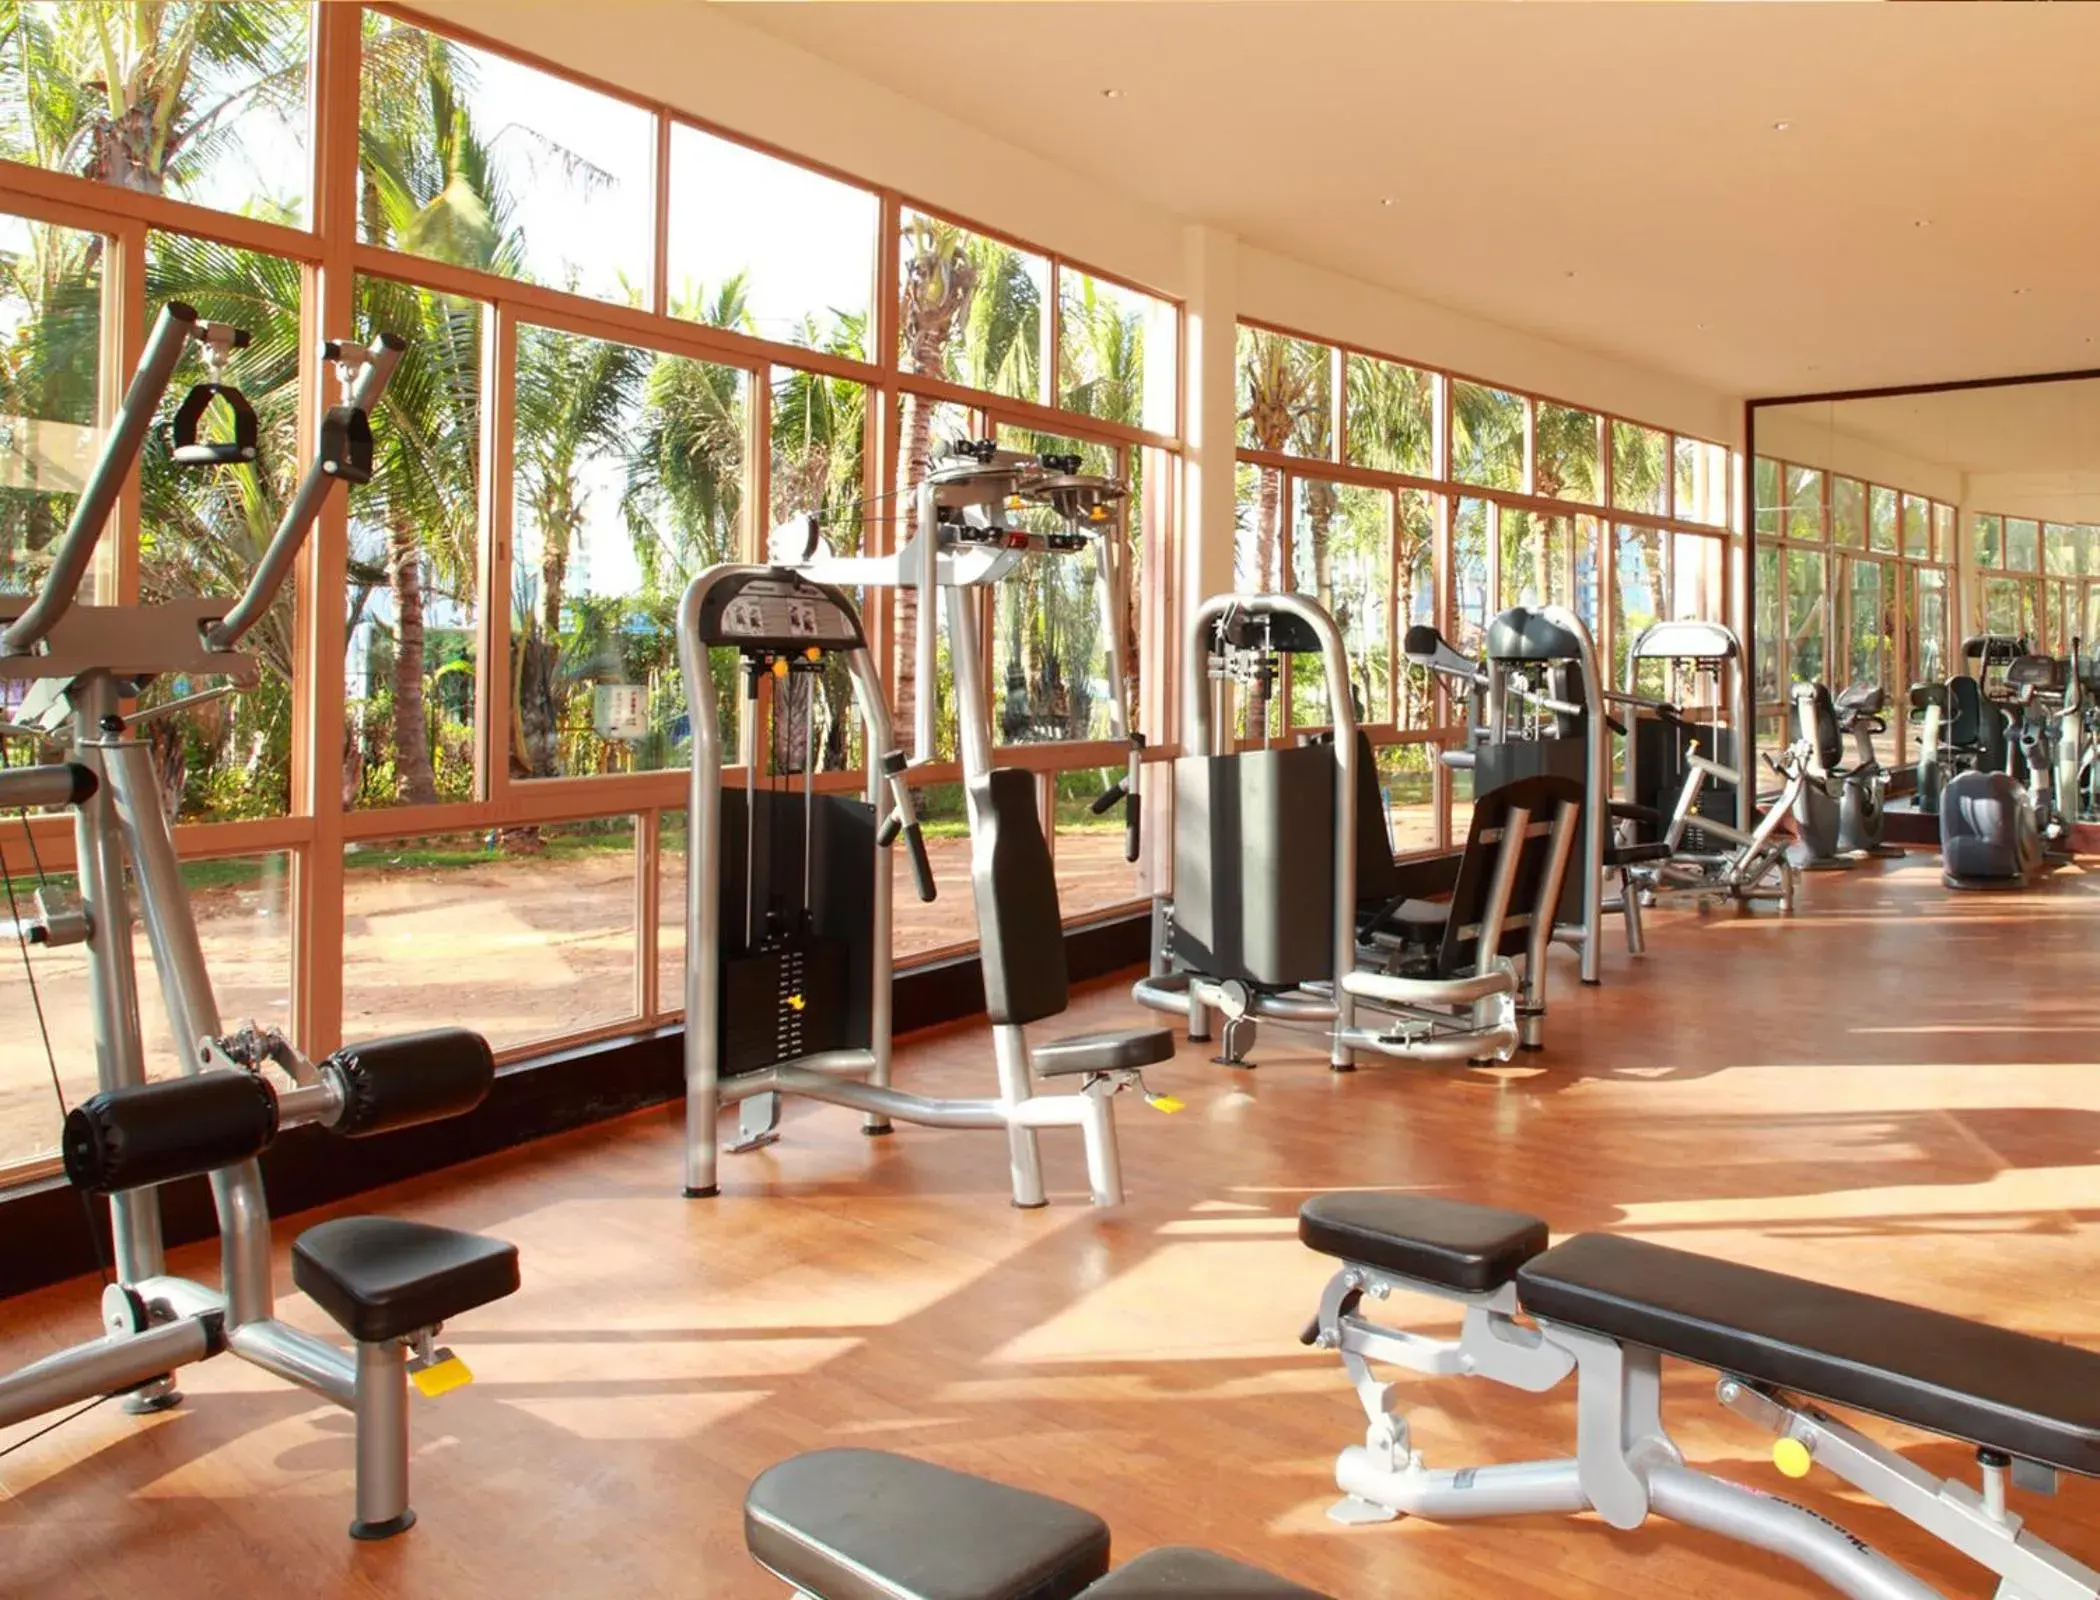 Fitness centre/facilities, Fitness Center/Facilities in Howard Johnson Resort Sanya Bay